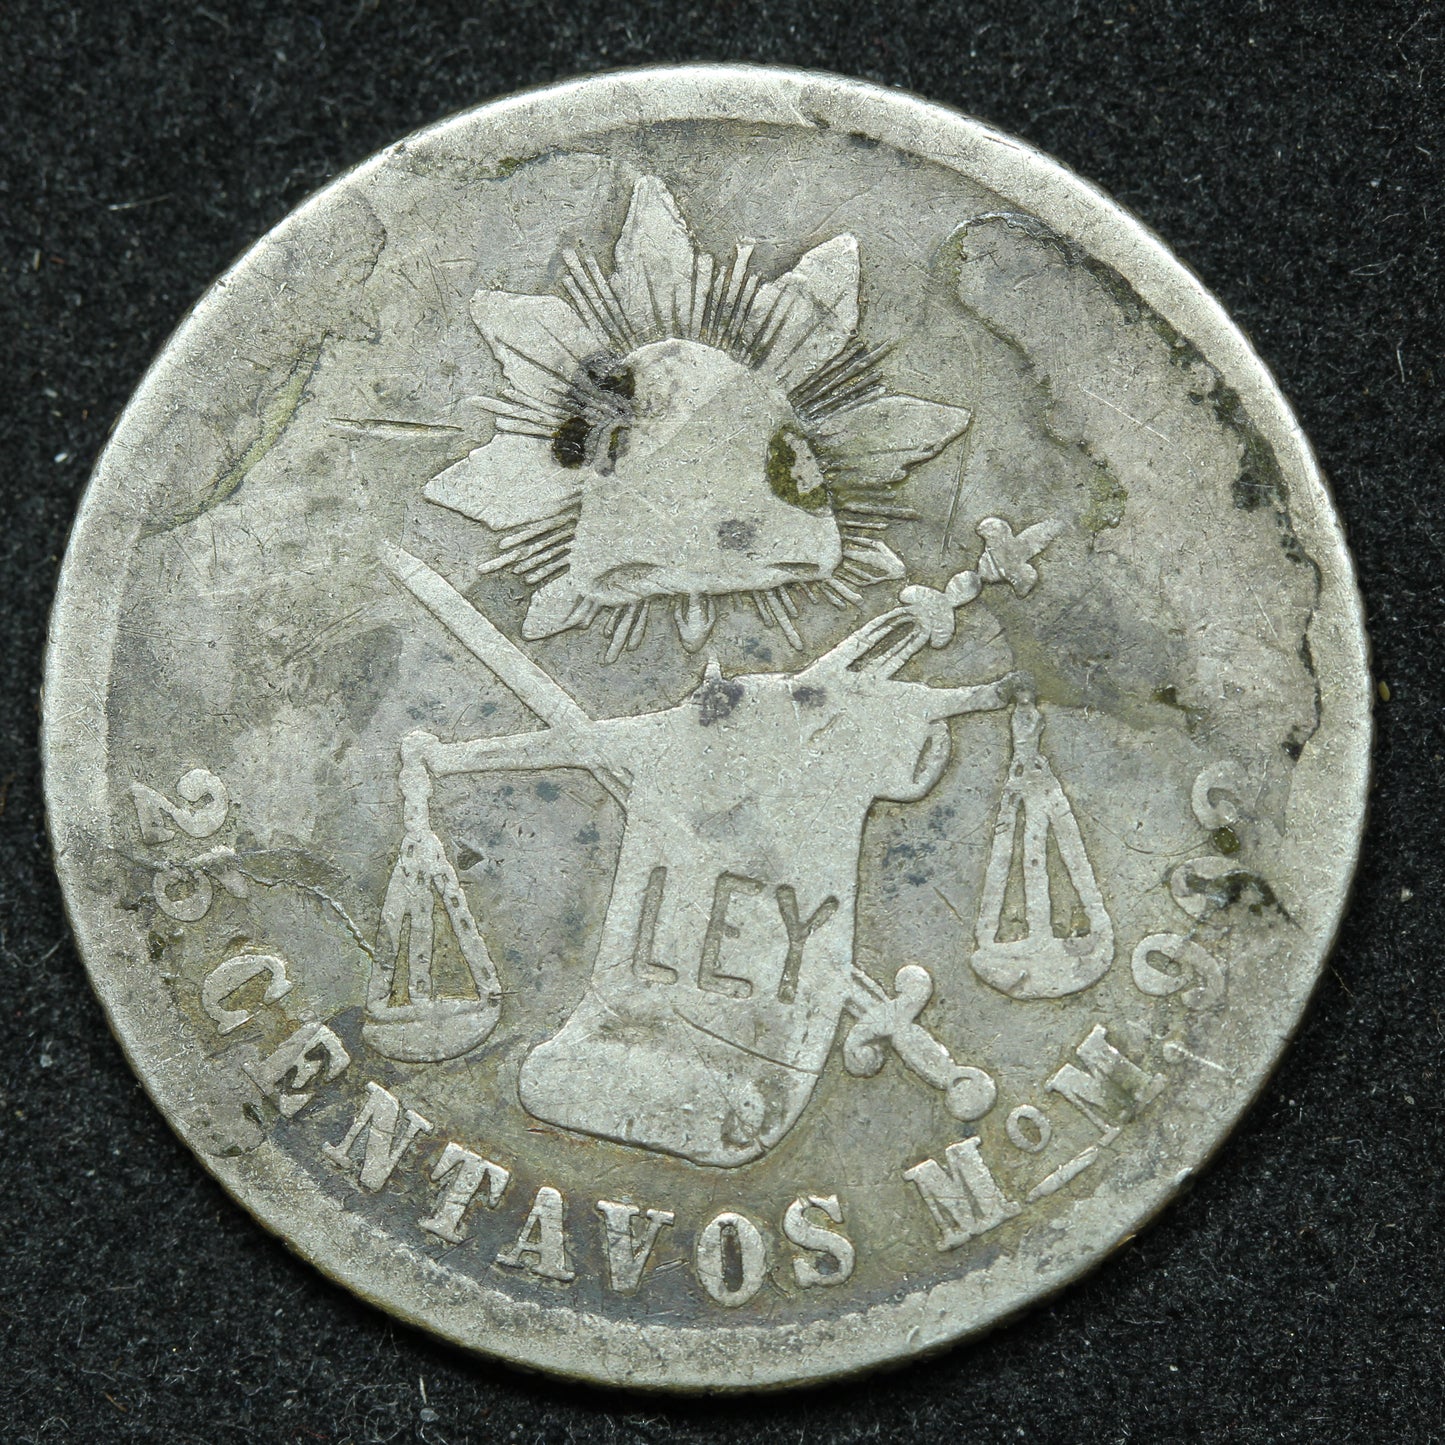 1889 25 Centavos Mo M Mexico Silver Coin - KM# 406.7